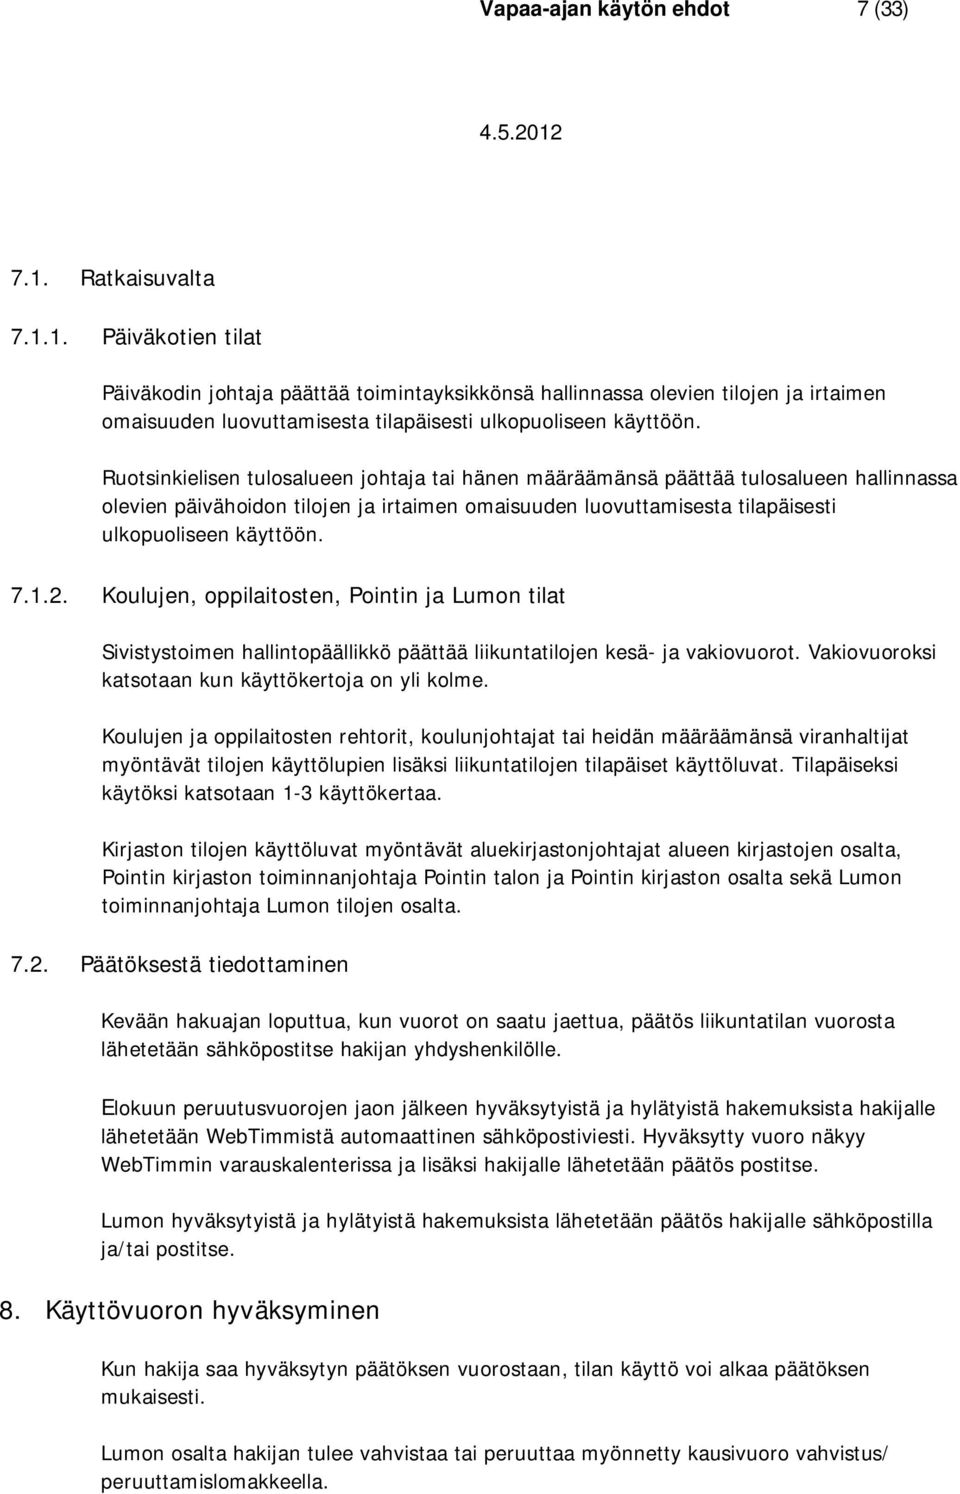 Ruotsinkielisen tulosalueen johtaja tai hänen määräämänsä päättää tulosalueen hallinnassa olevien päivähoidon tilojen ja irtaimen omaisuuden luovuttamisesta tilapäisesti ulkopuoliseen käyttöön. 7.1.2.